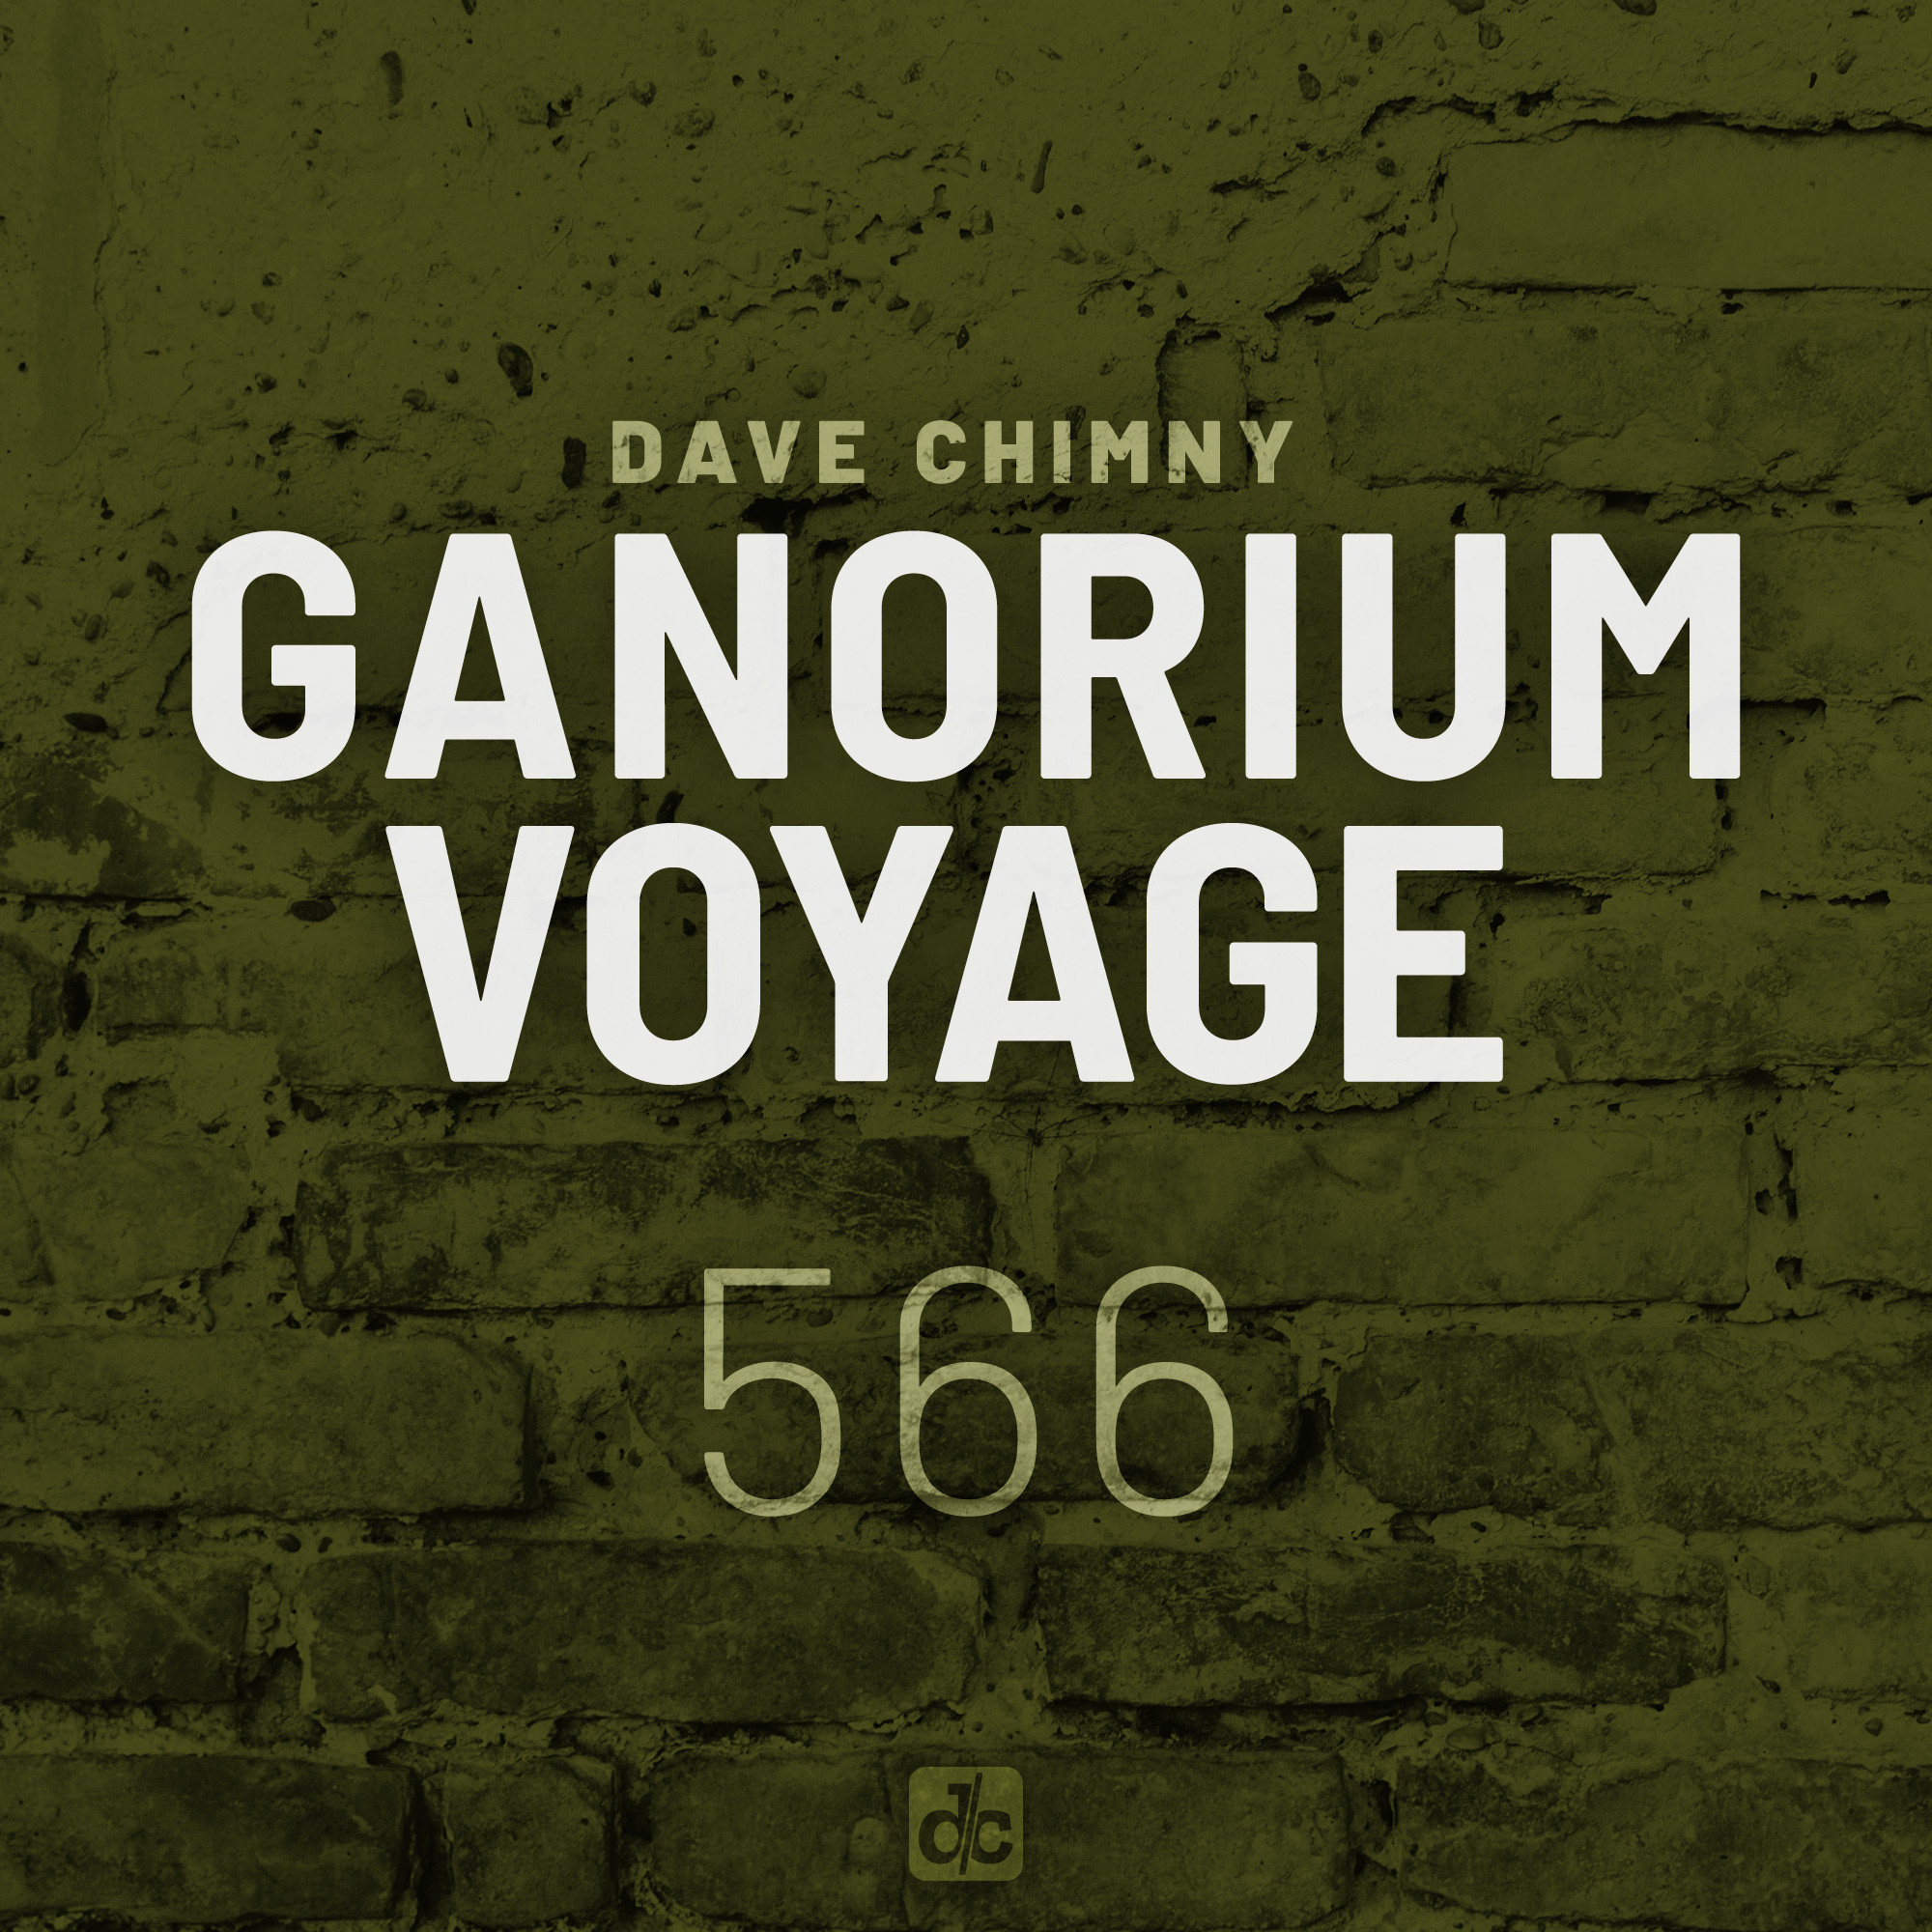 Ganorium Voyage 566